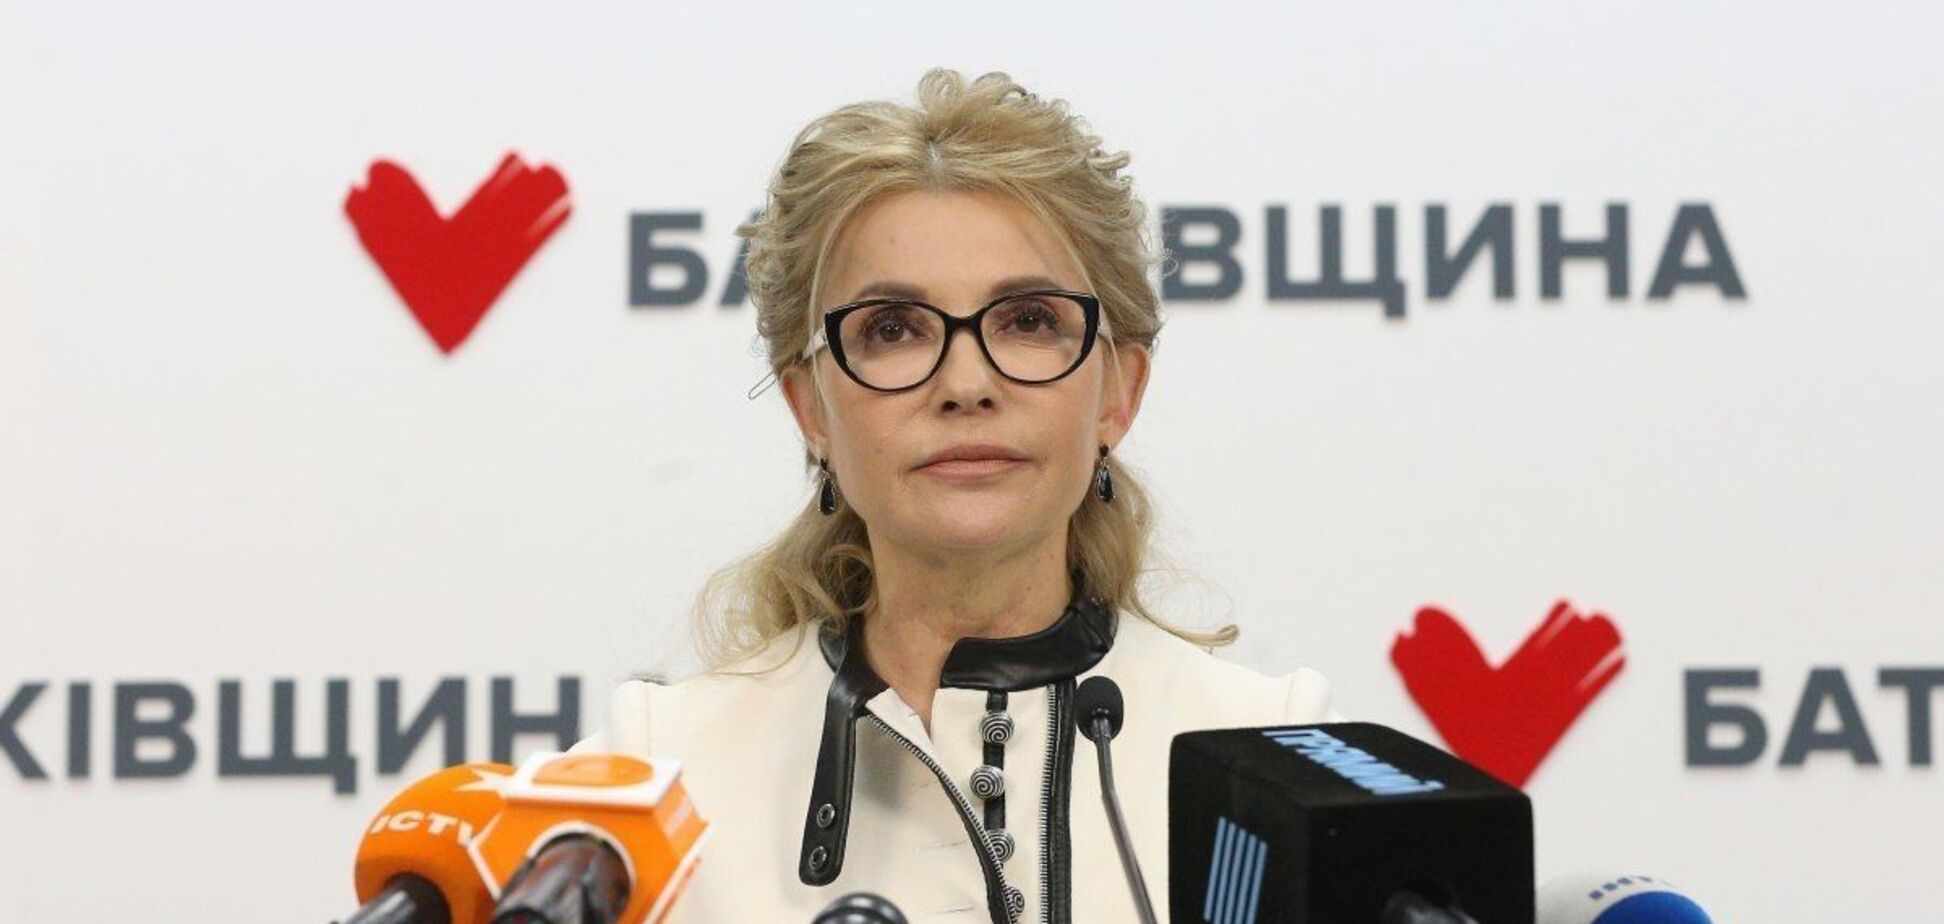 'Батькивщина' Тимошенко имеет поддержку людей, программу действий и шансы возглавить коалицию в новой Раде, - РБК